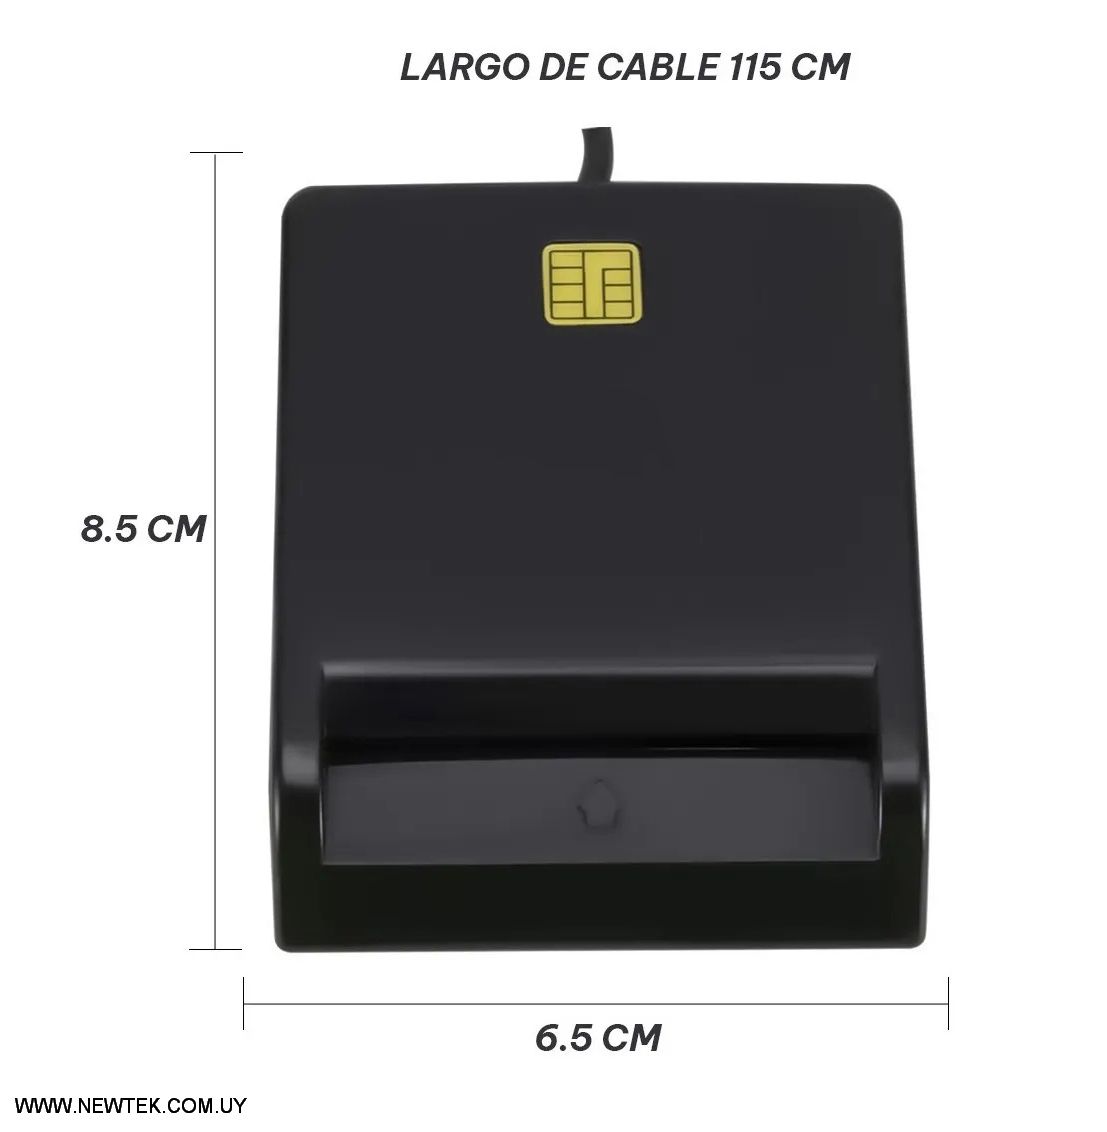 Lector de Cedula Digital USB Smart Card Lectora de Tarjeta con chip Compatible